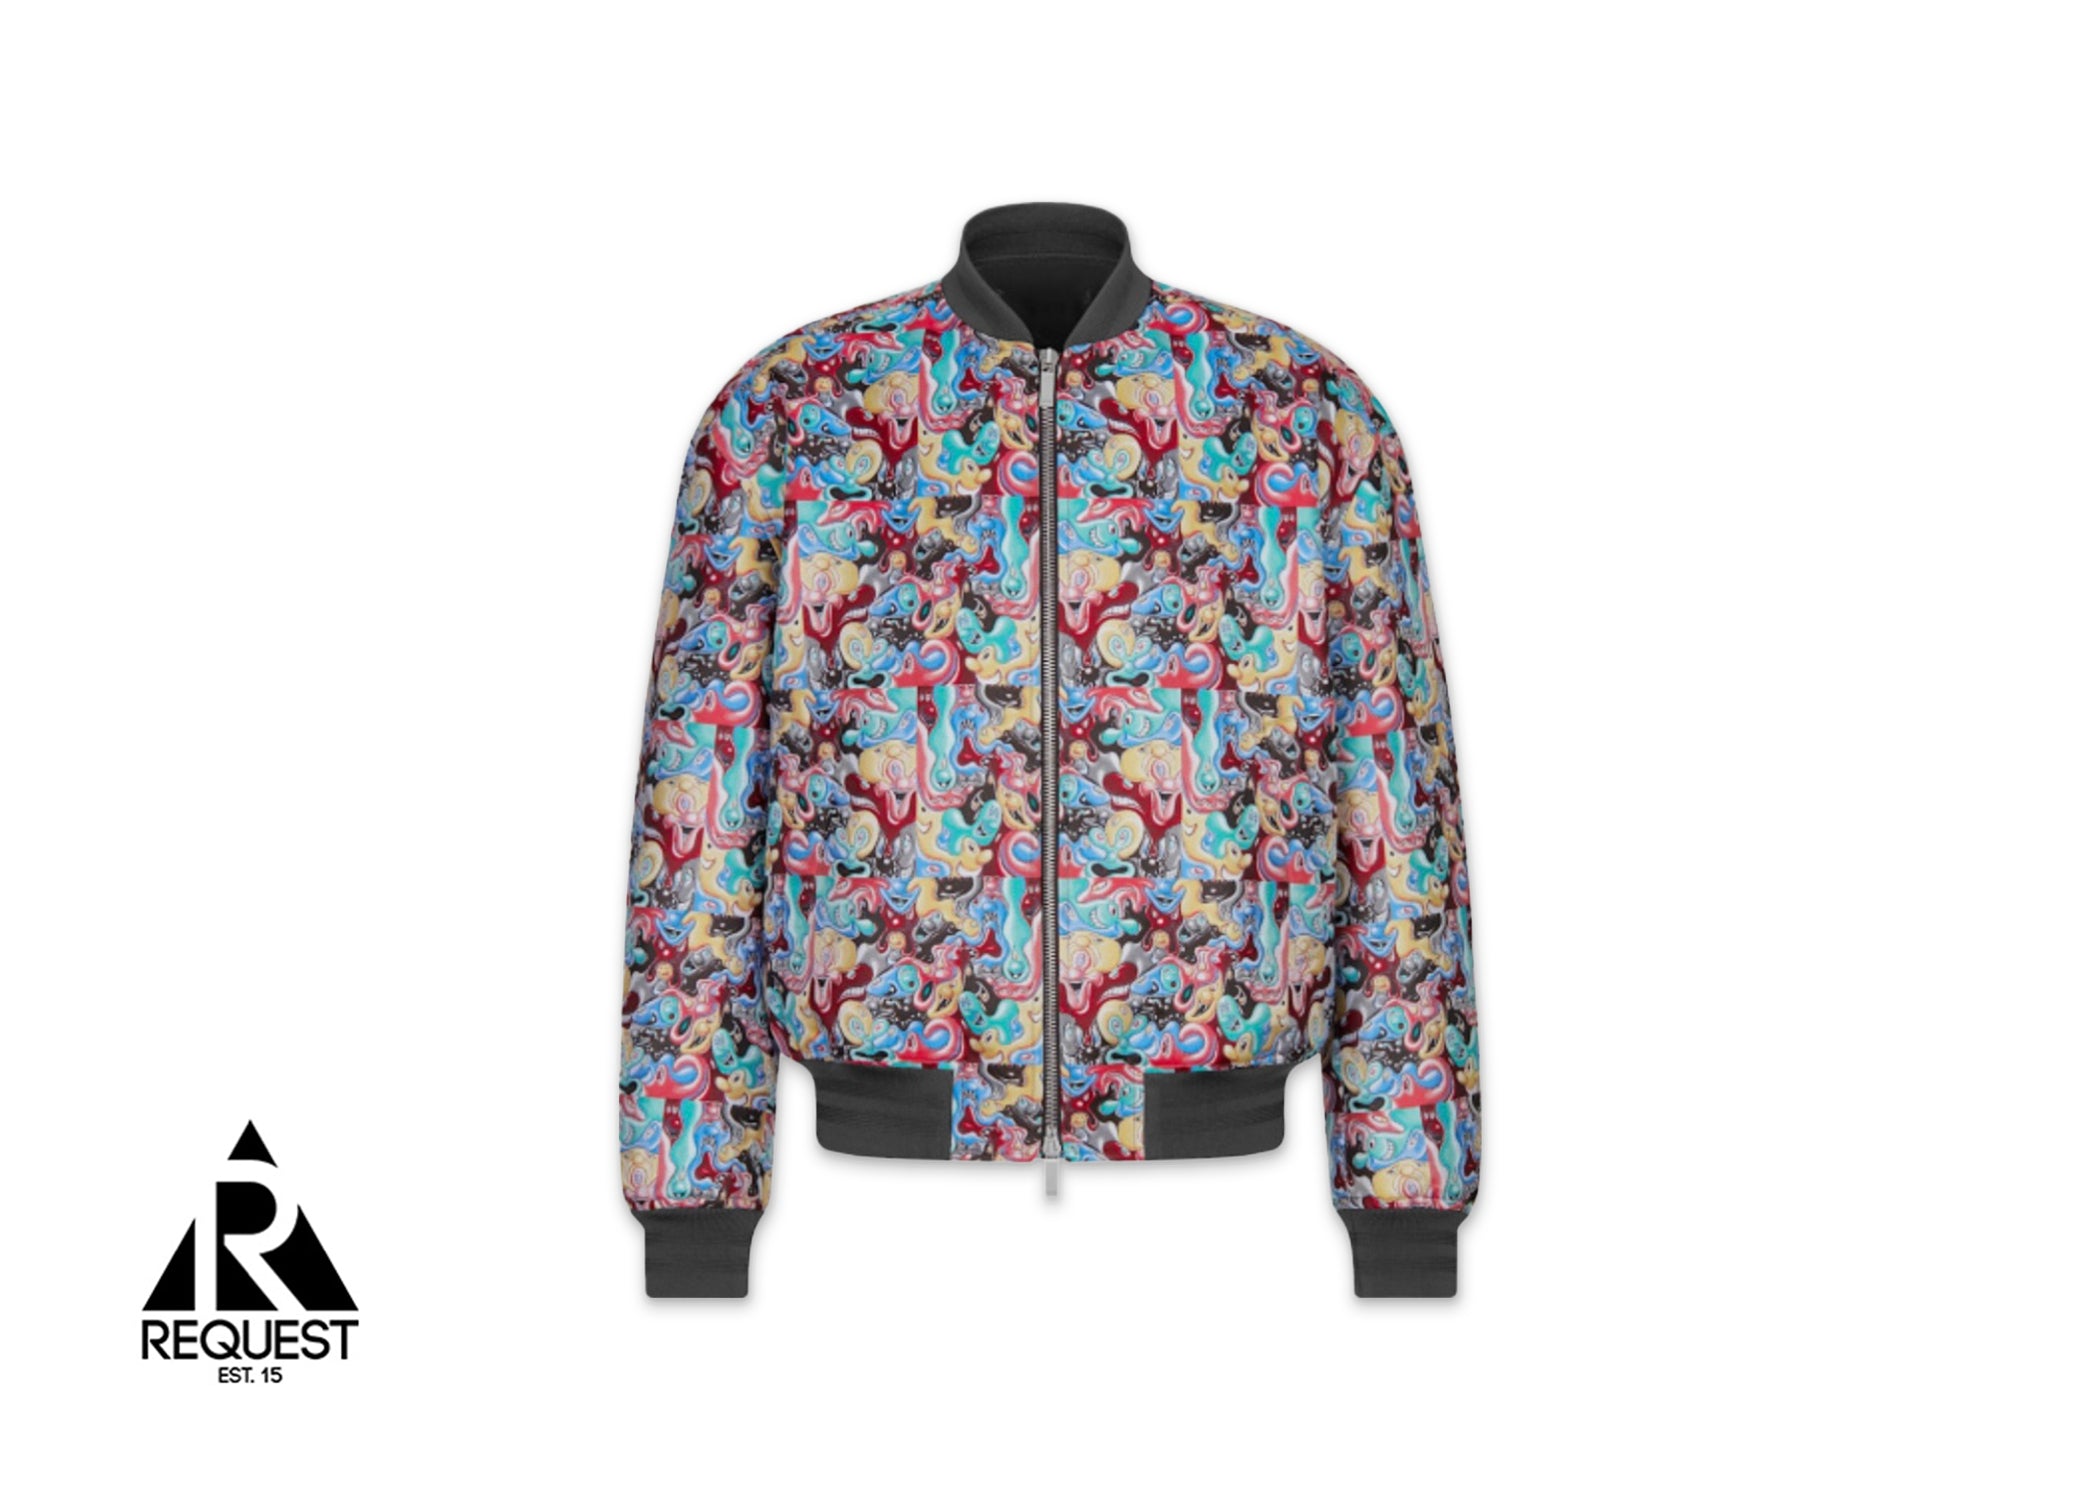 Dior Kenny Scharf Bomber Jacket “Multicolor"